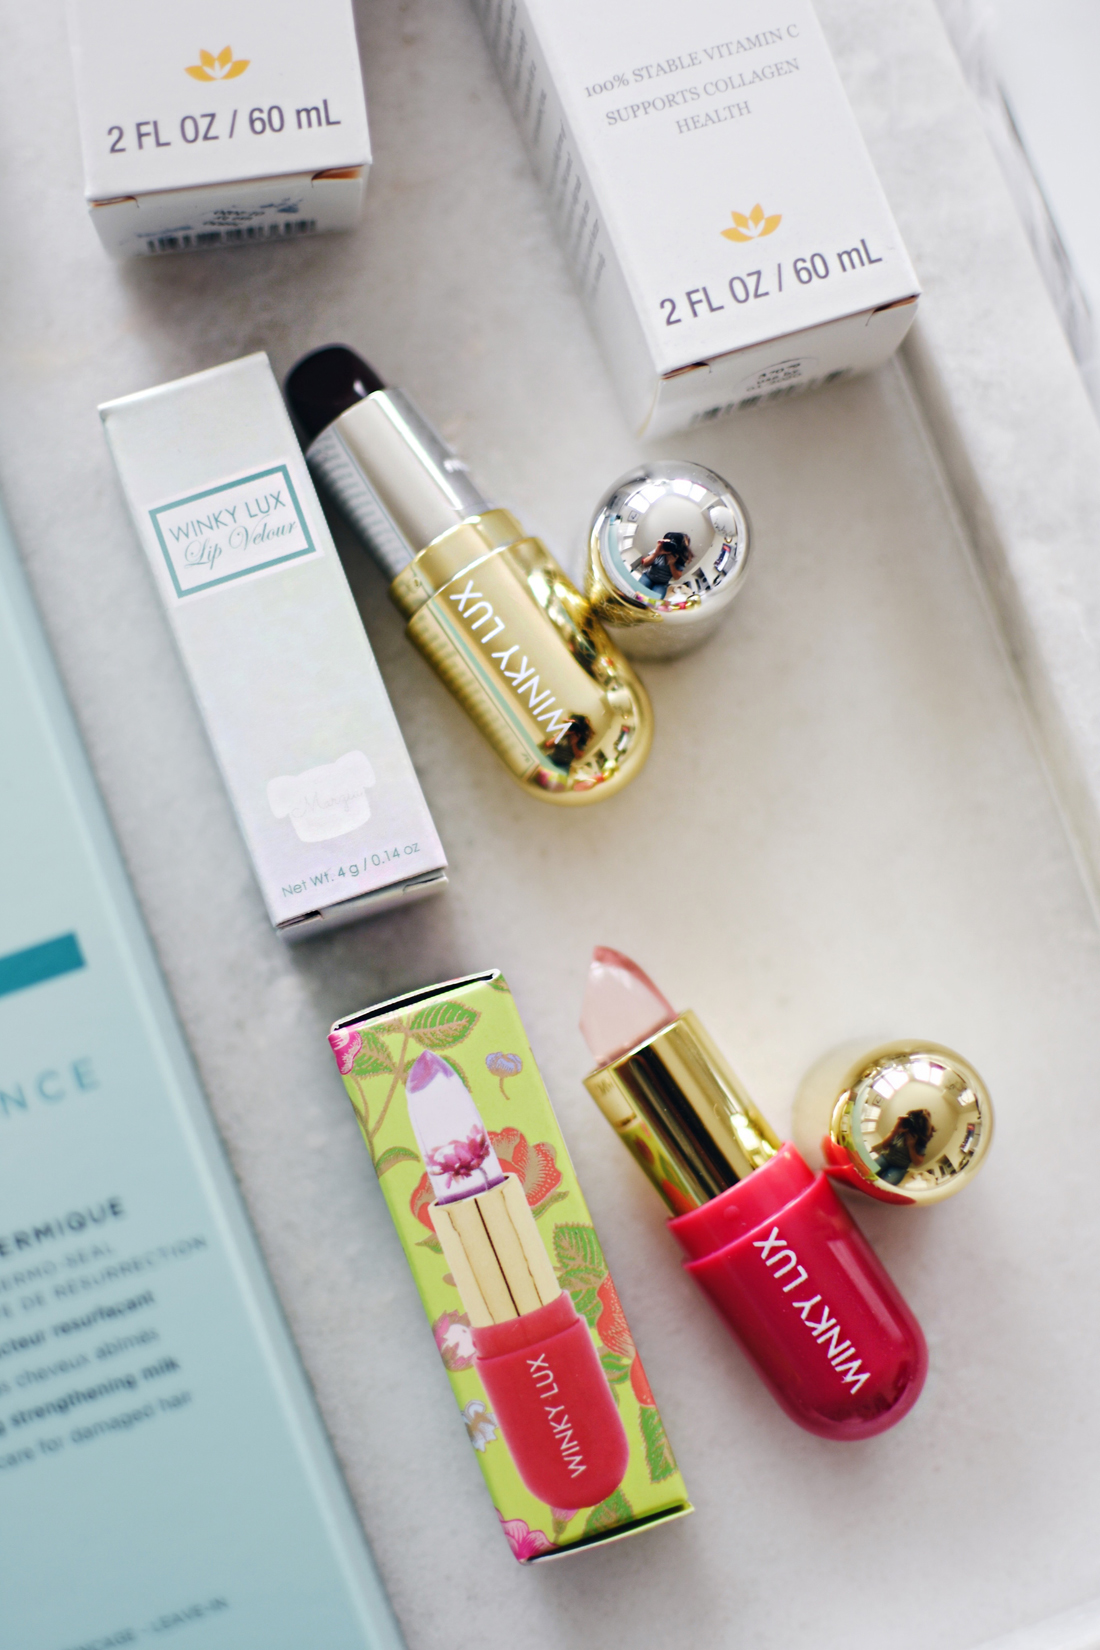 Start Studded style secrets Babbleboxx, Winky Lux lipsticks